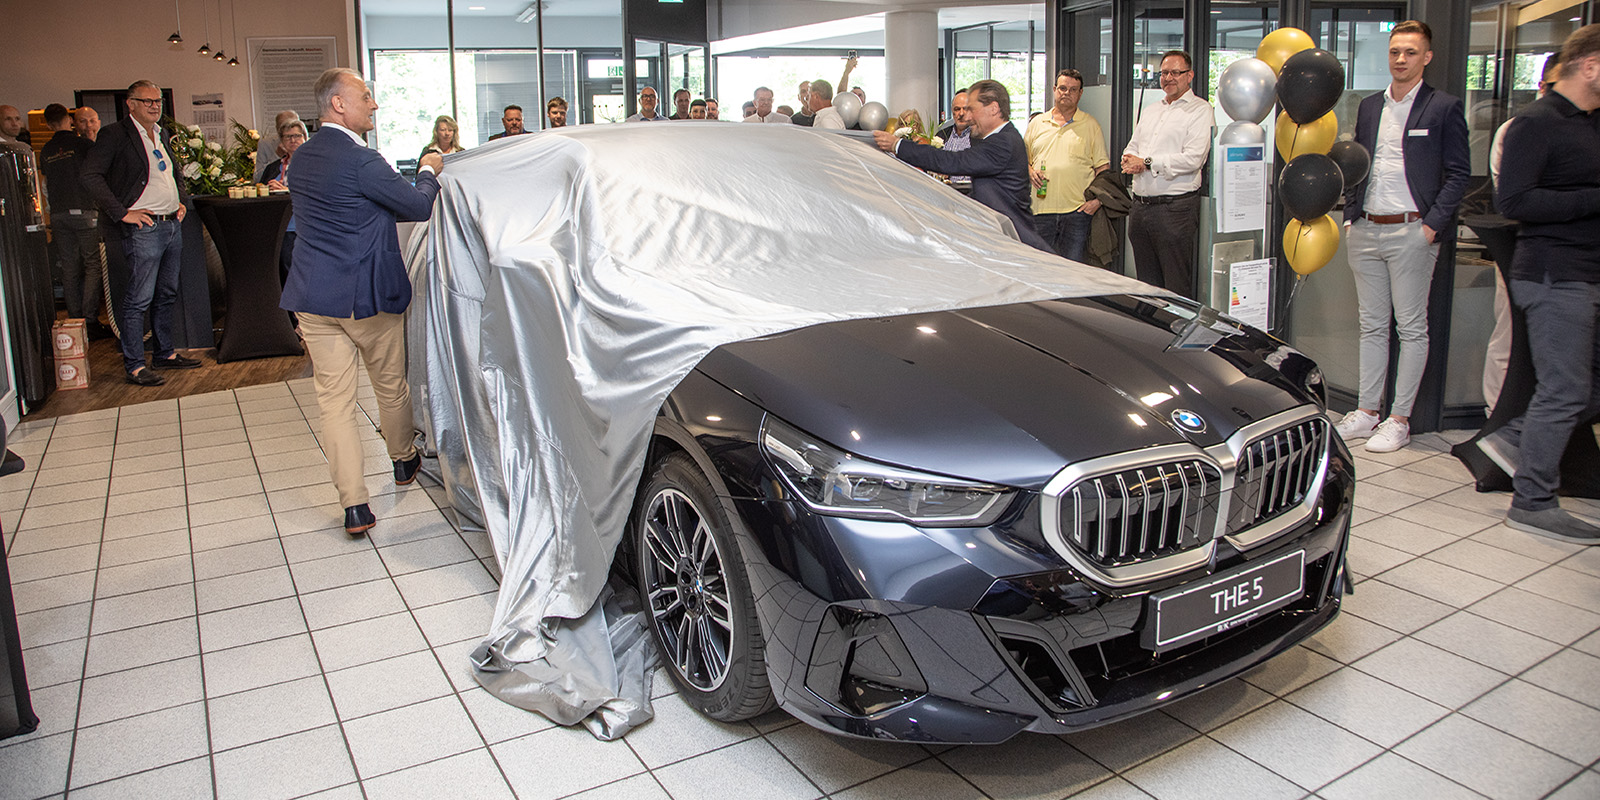 Enthüllung des neuen 5er Touring von BMW vor geladenen Gästen. Foto: zv